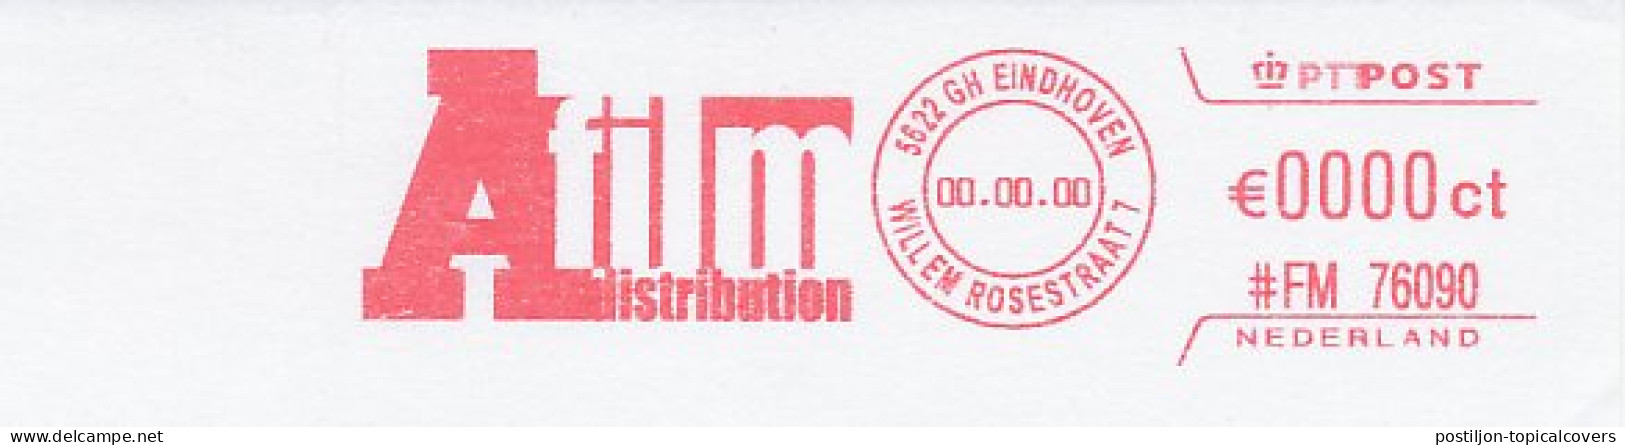 Meter Proof / Test Strip FRAMA Supplier Netherlands A Fiml Distribution - Film